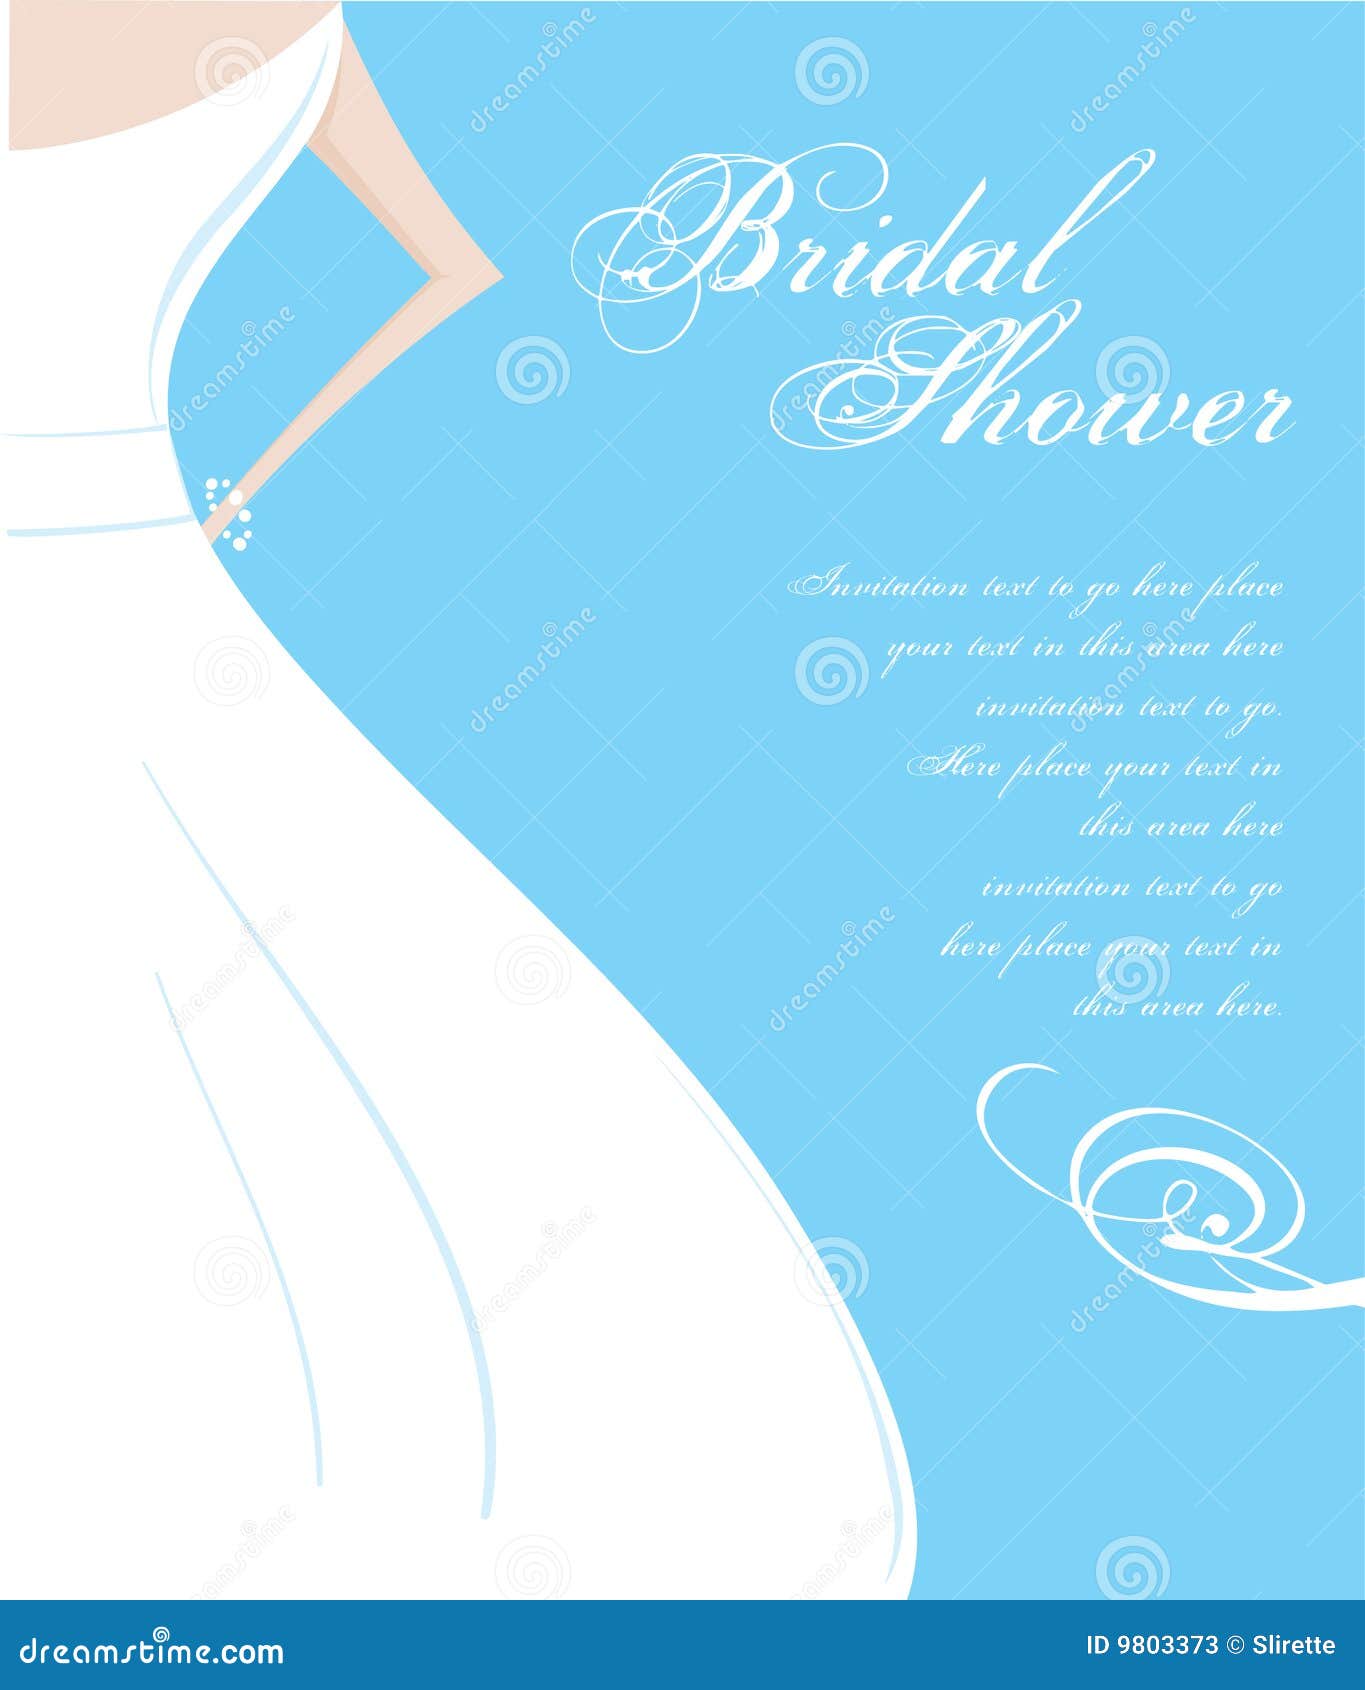 bridal shower invitation clipart - photo #8